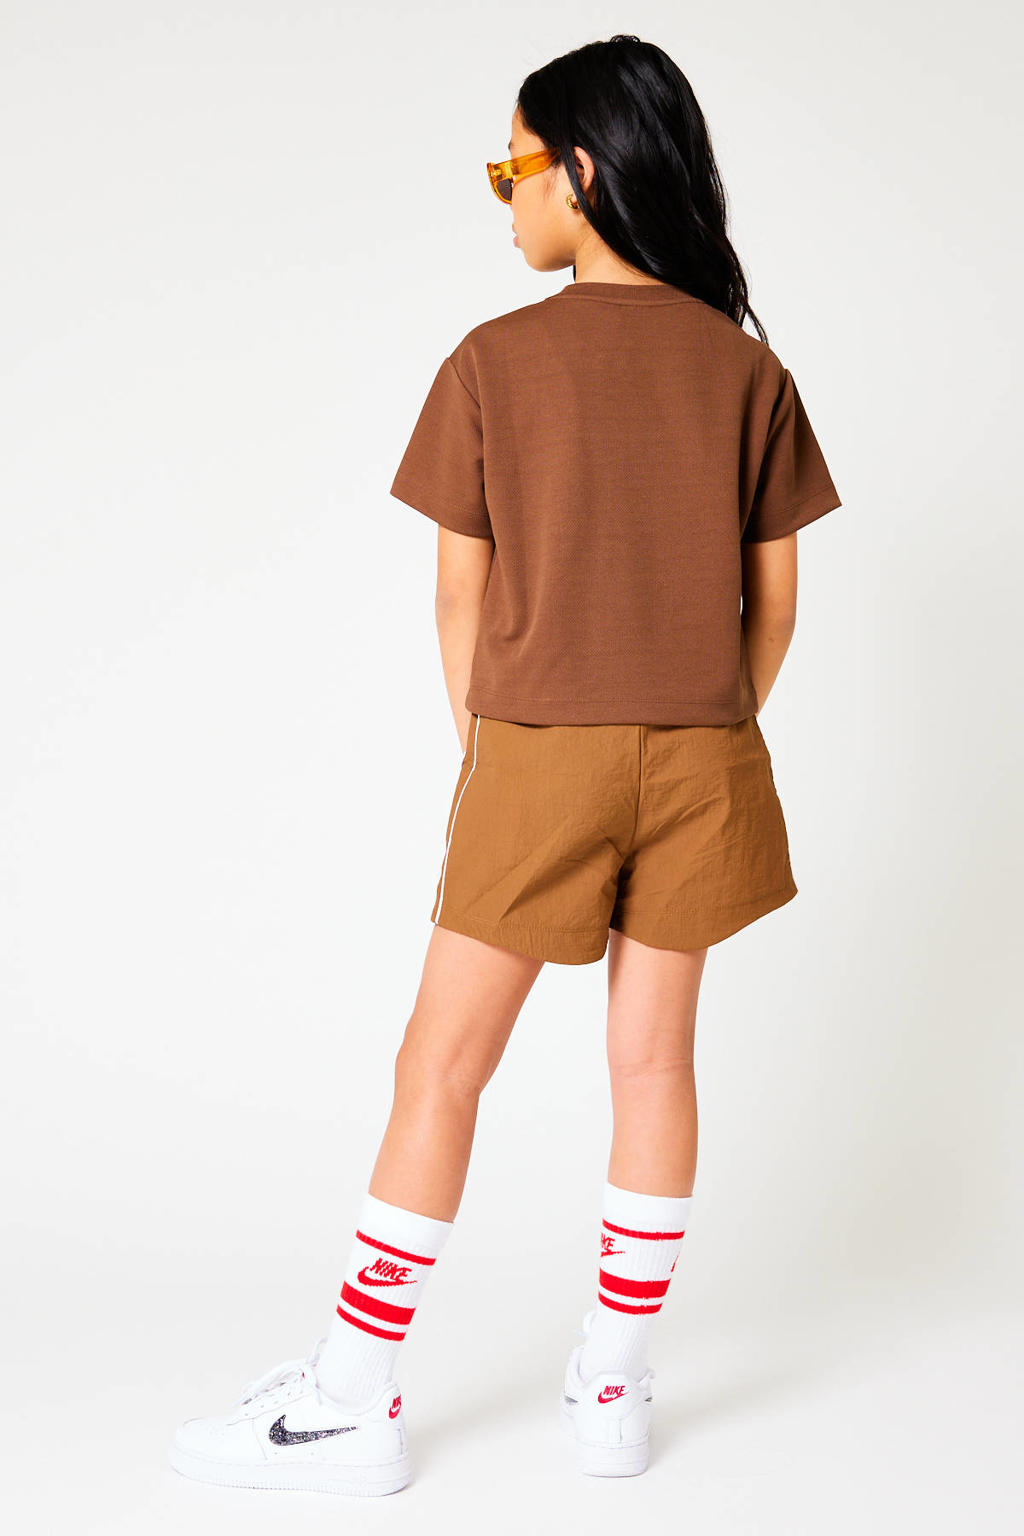 Bruine meisjes CoolCat Junior T-shirt Elodie CG van polyester met tekst print, korte mouwen en ronde hals